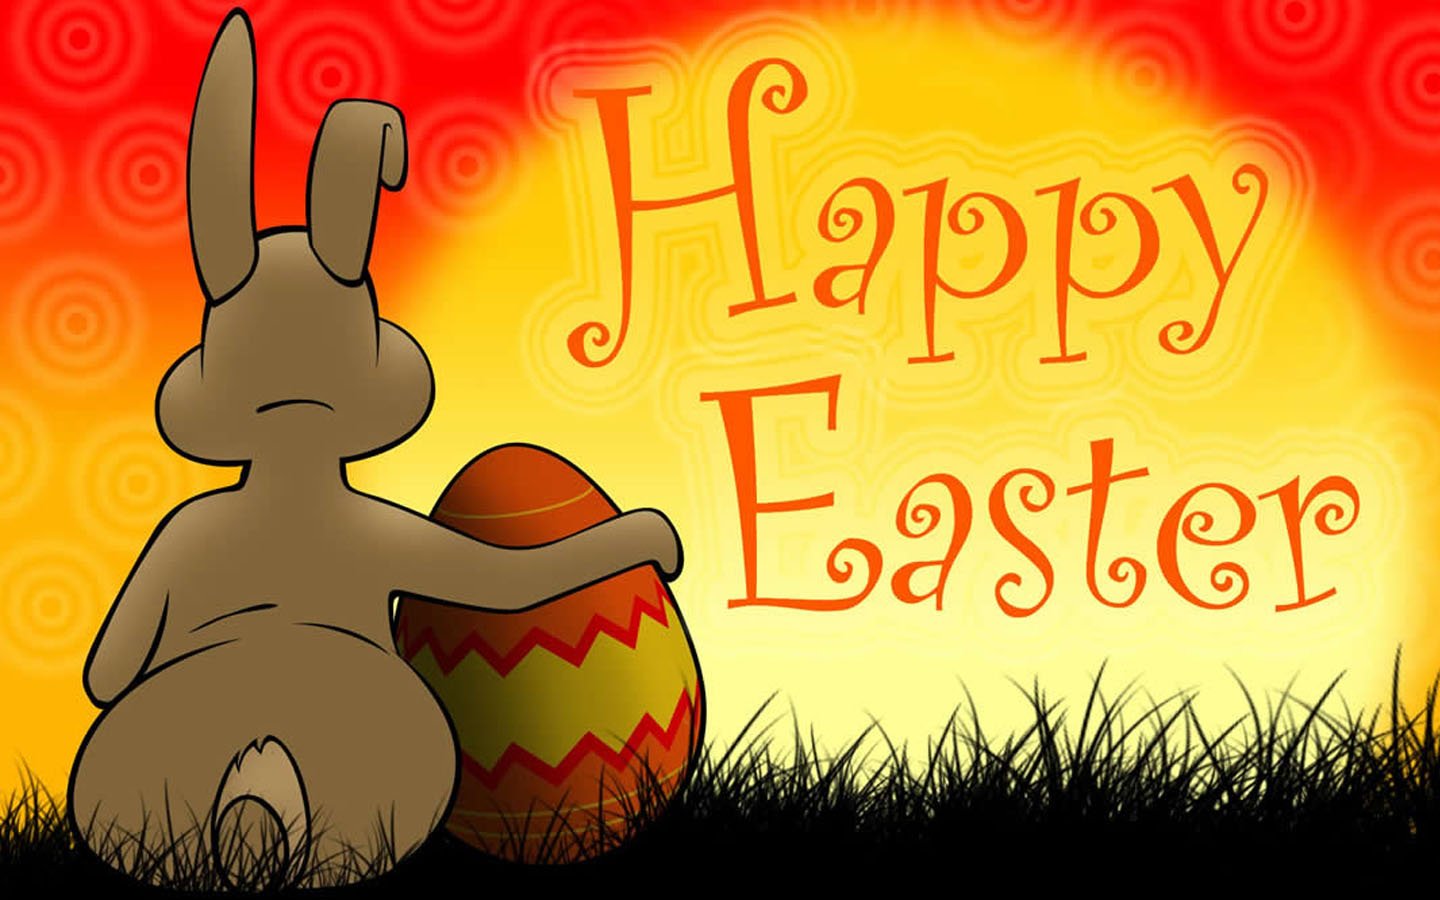 http://2.bp.blogspot.com/-L5GhO4MtGEE/UUDWNPA8ZxI/AAAAAAAAJZU/SrISlrqslkM/s1600/Beautiful+Easter+Wallpapers+(5).jpg